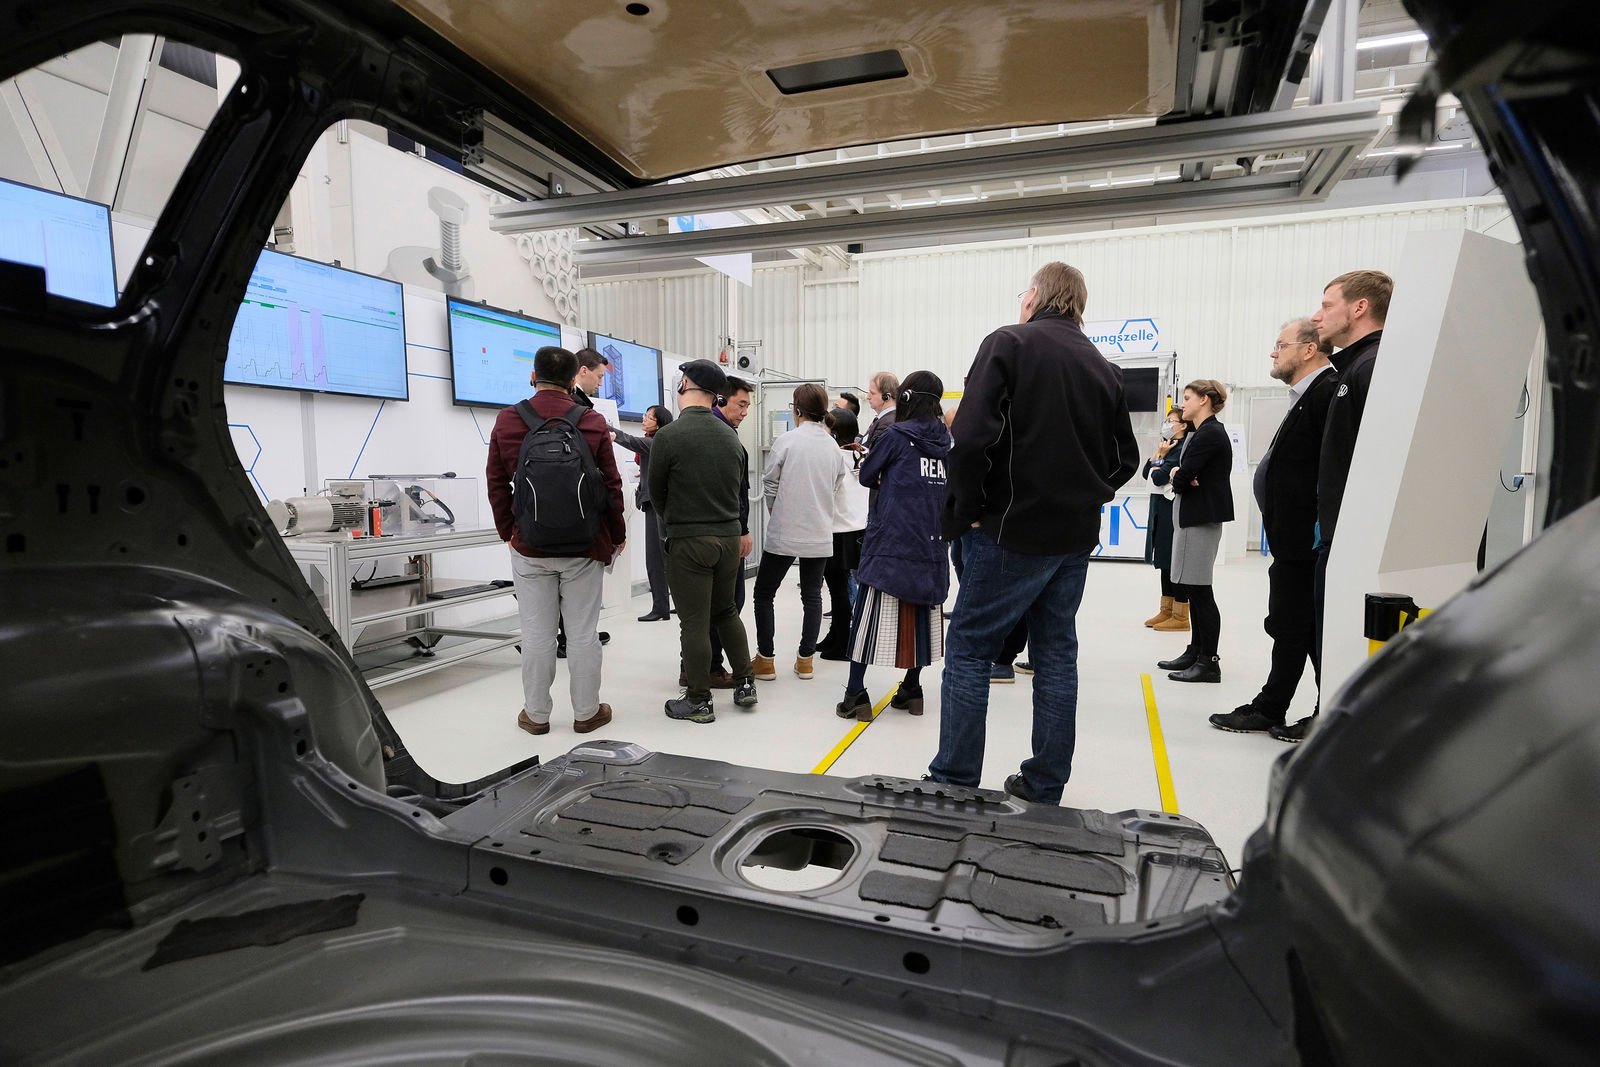 Medientag Digitalisierung in der Produktion bei Volkswagen